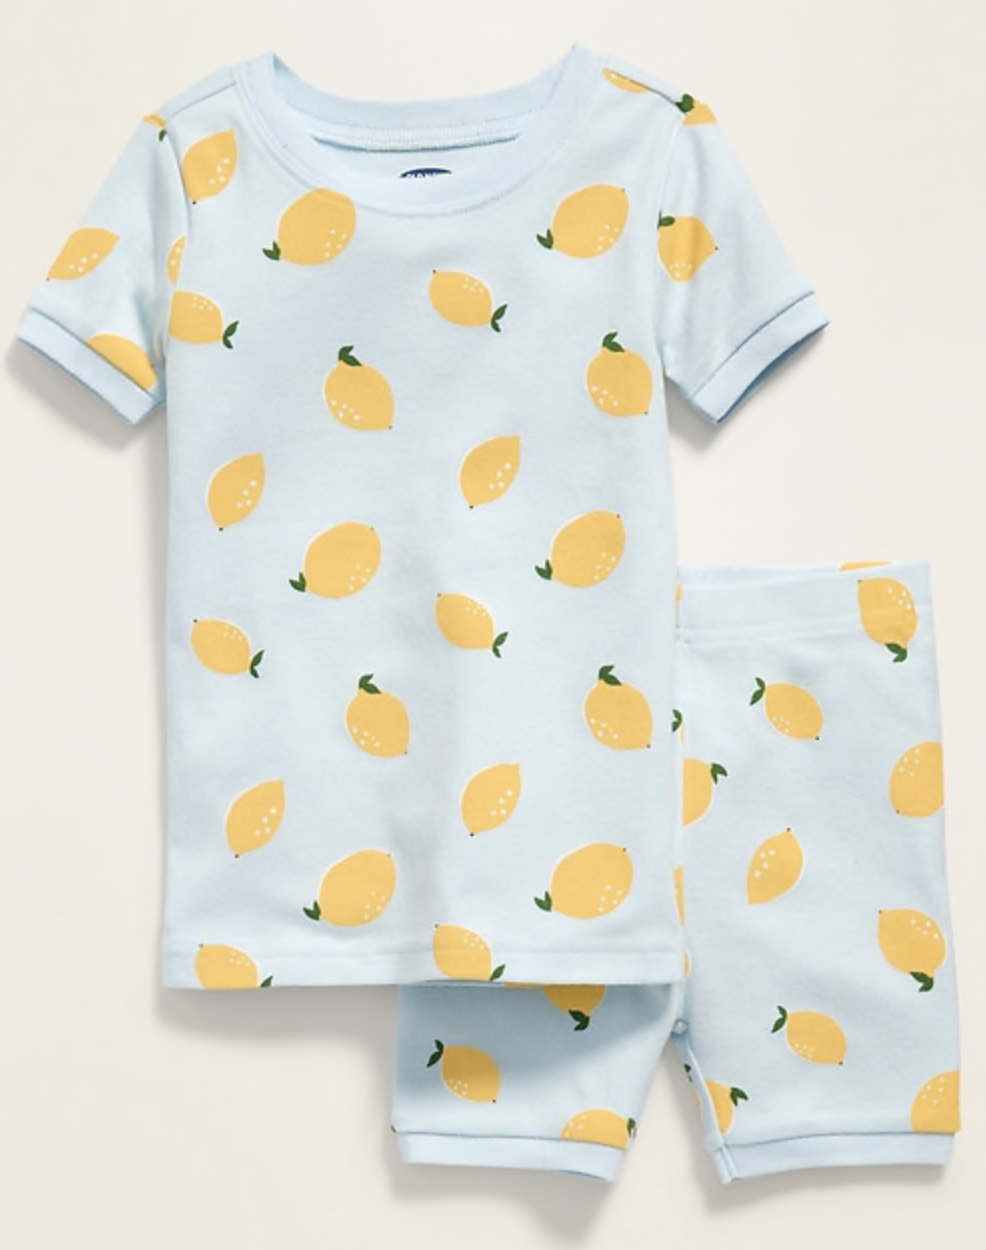 $12 Old Navy lemon pajamas